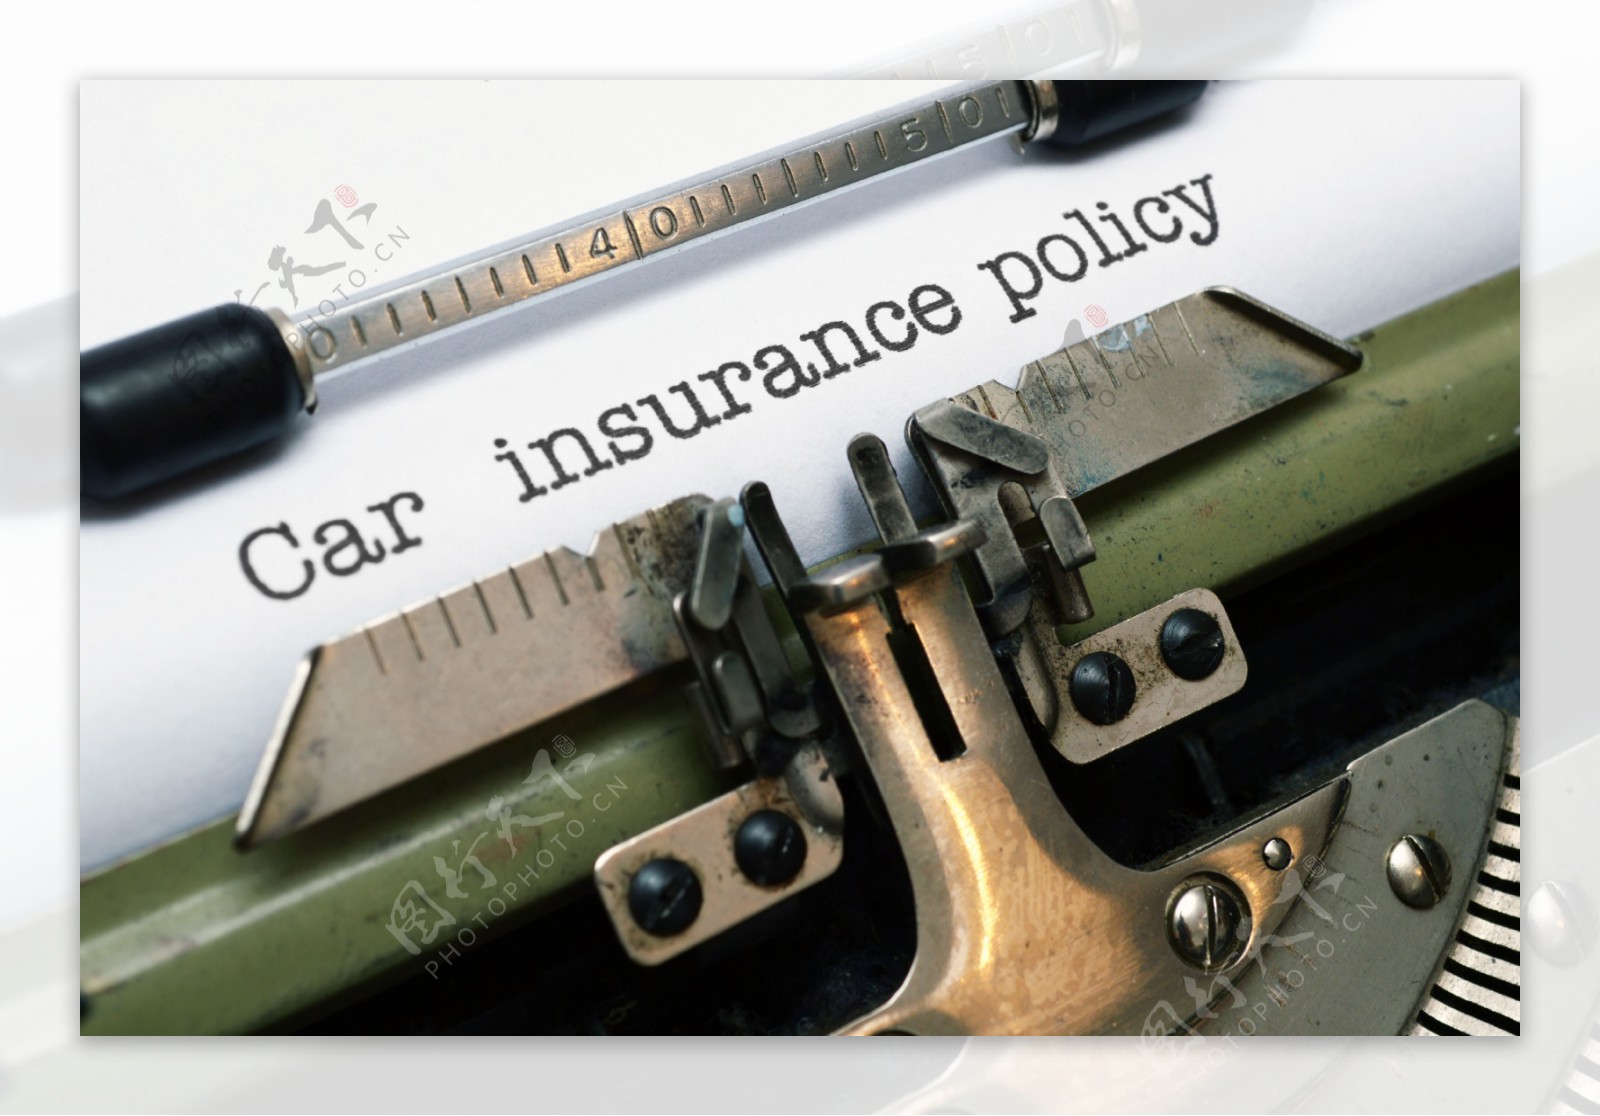 汽车保险政策